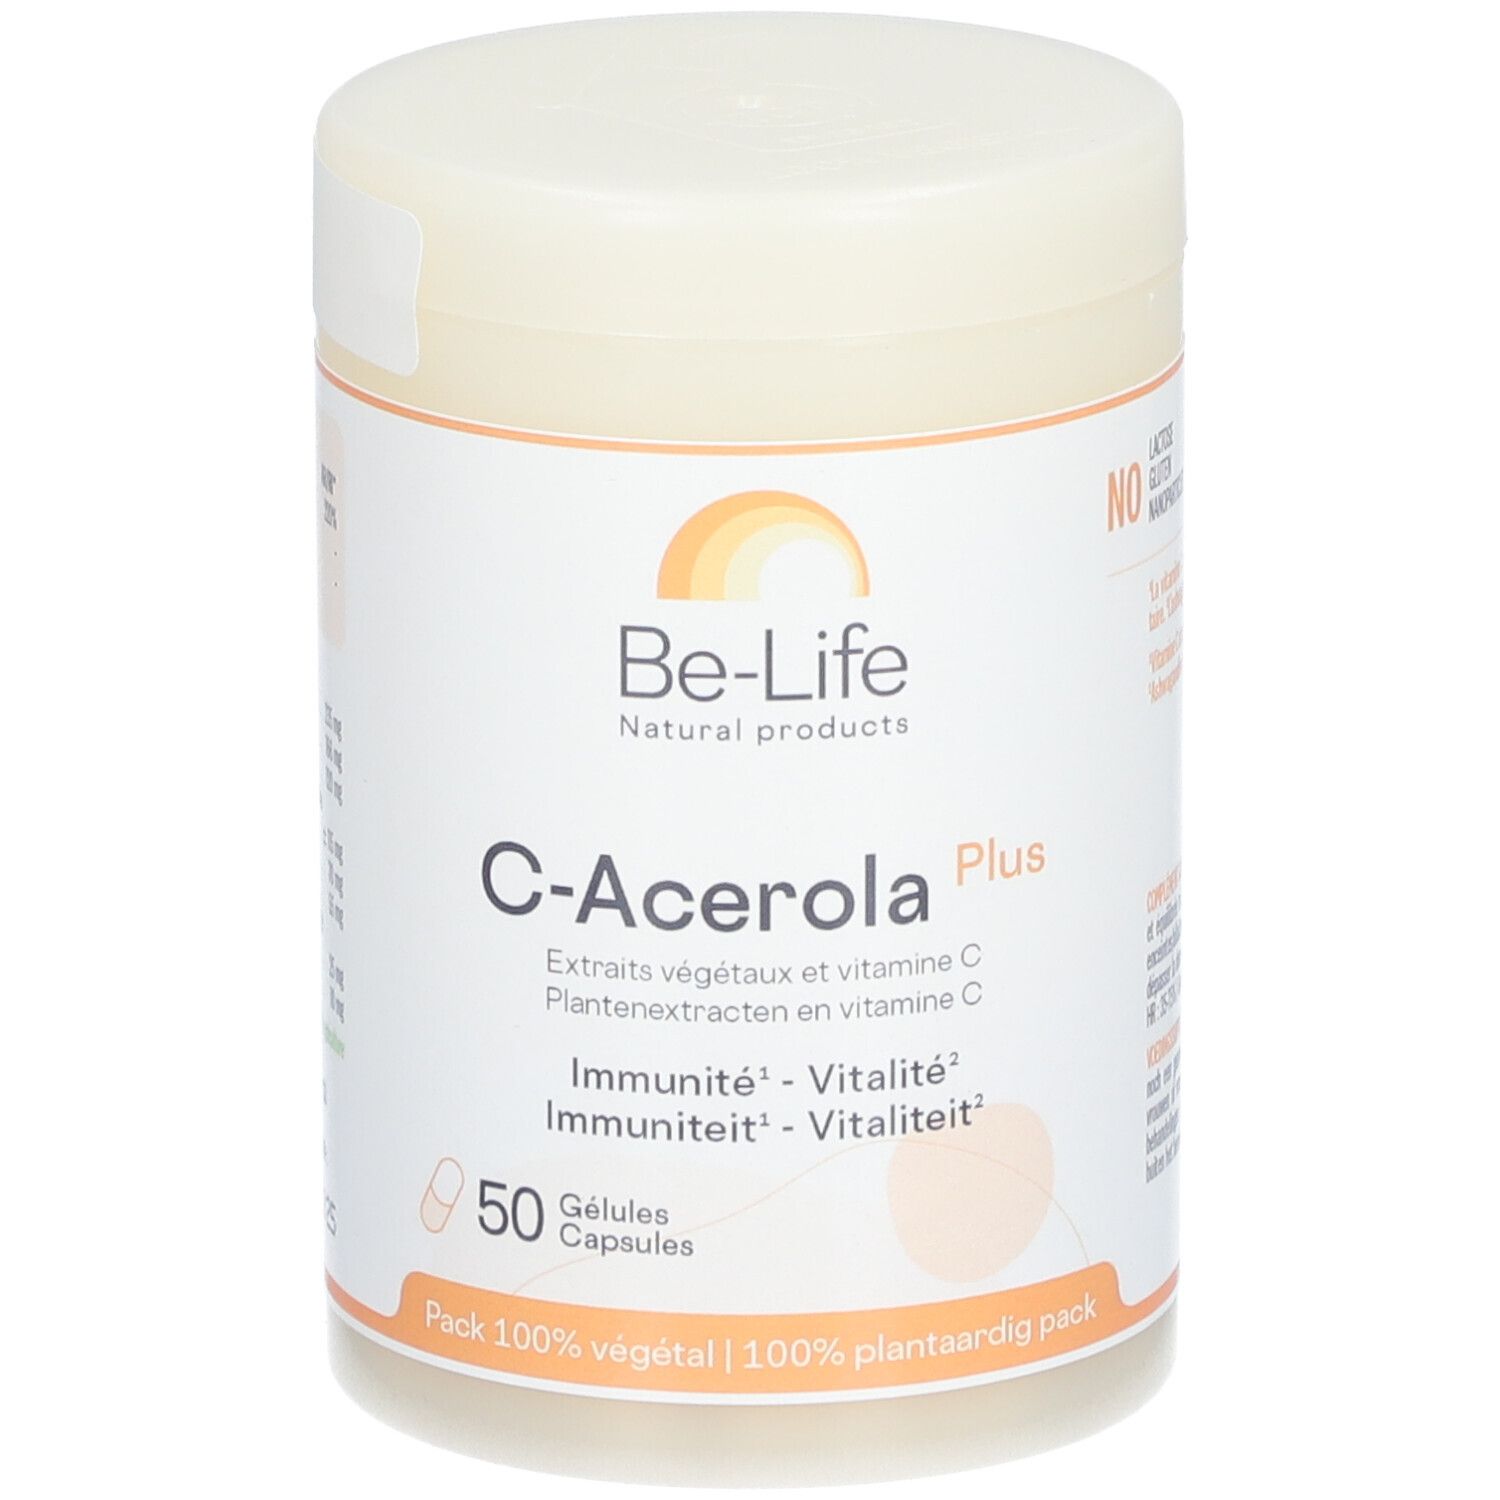 Be-Life C-Acerola Plus